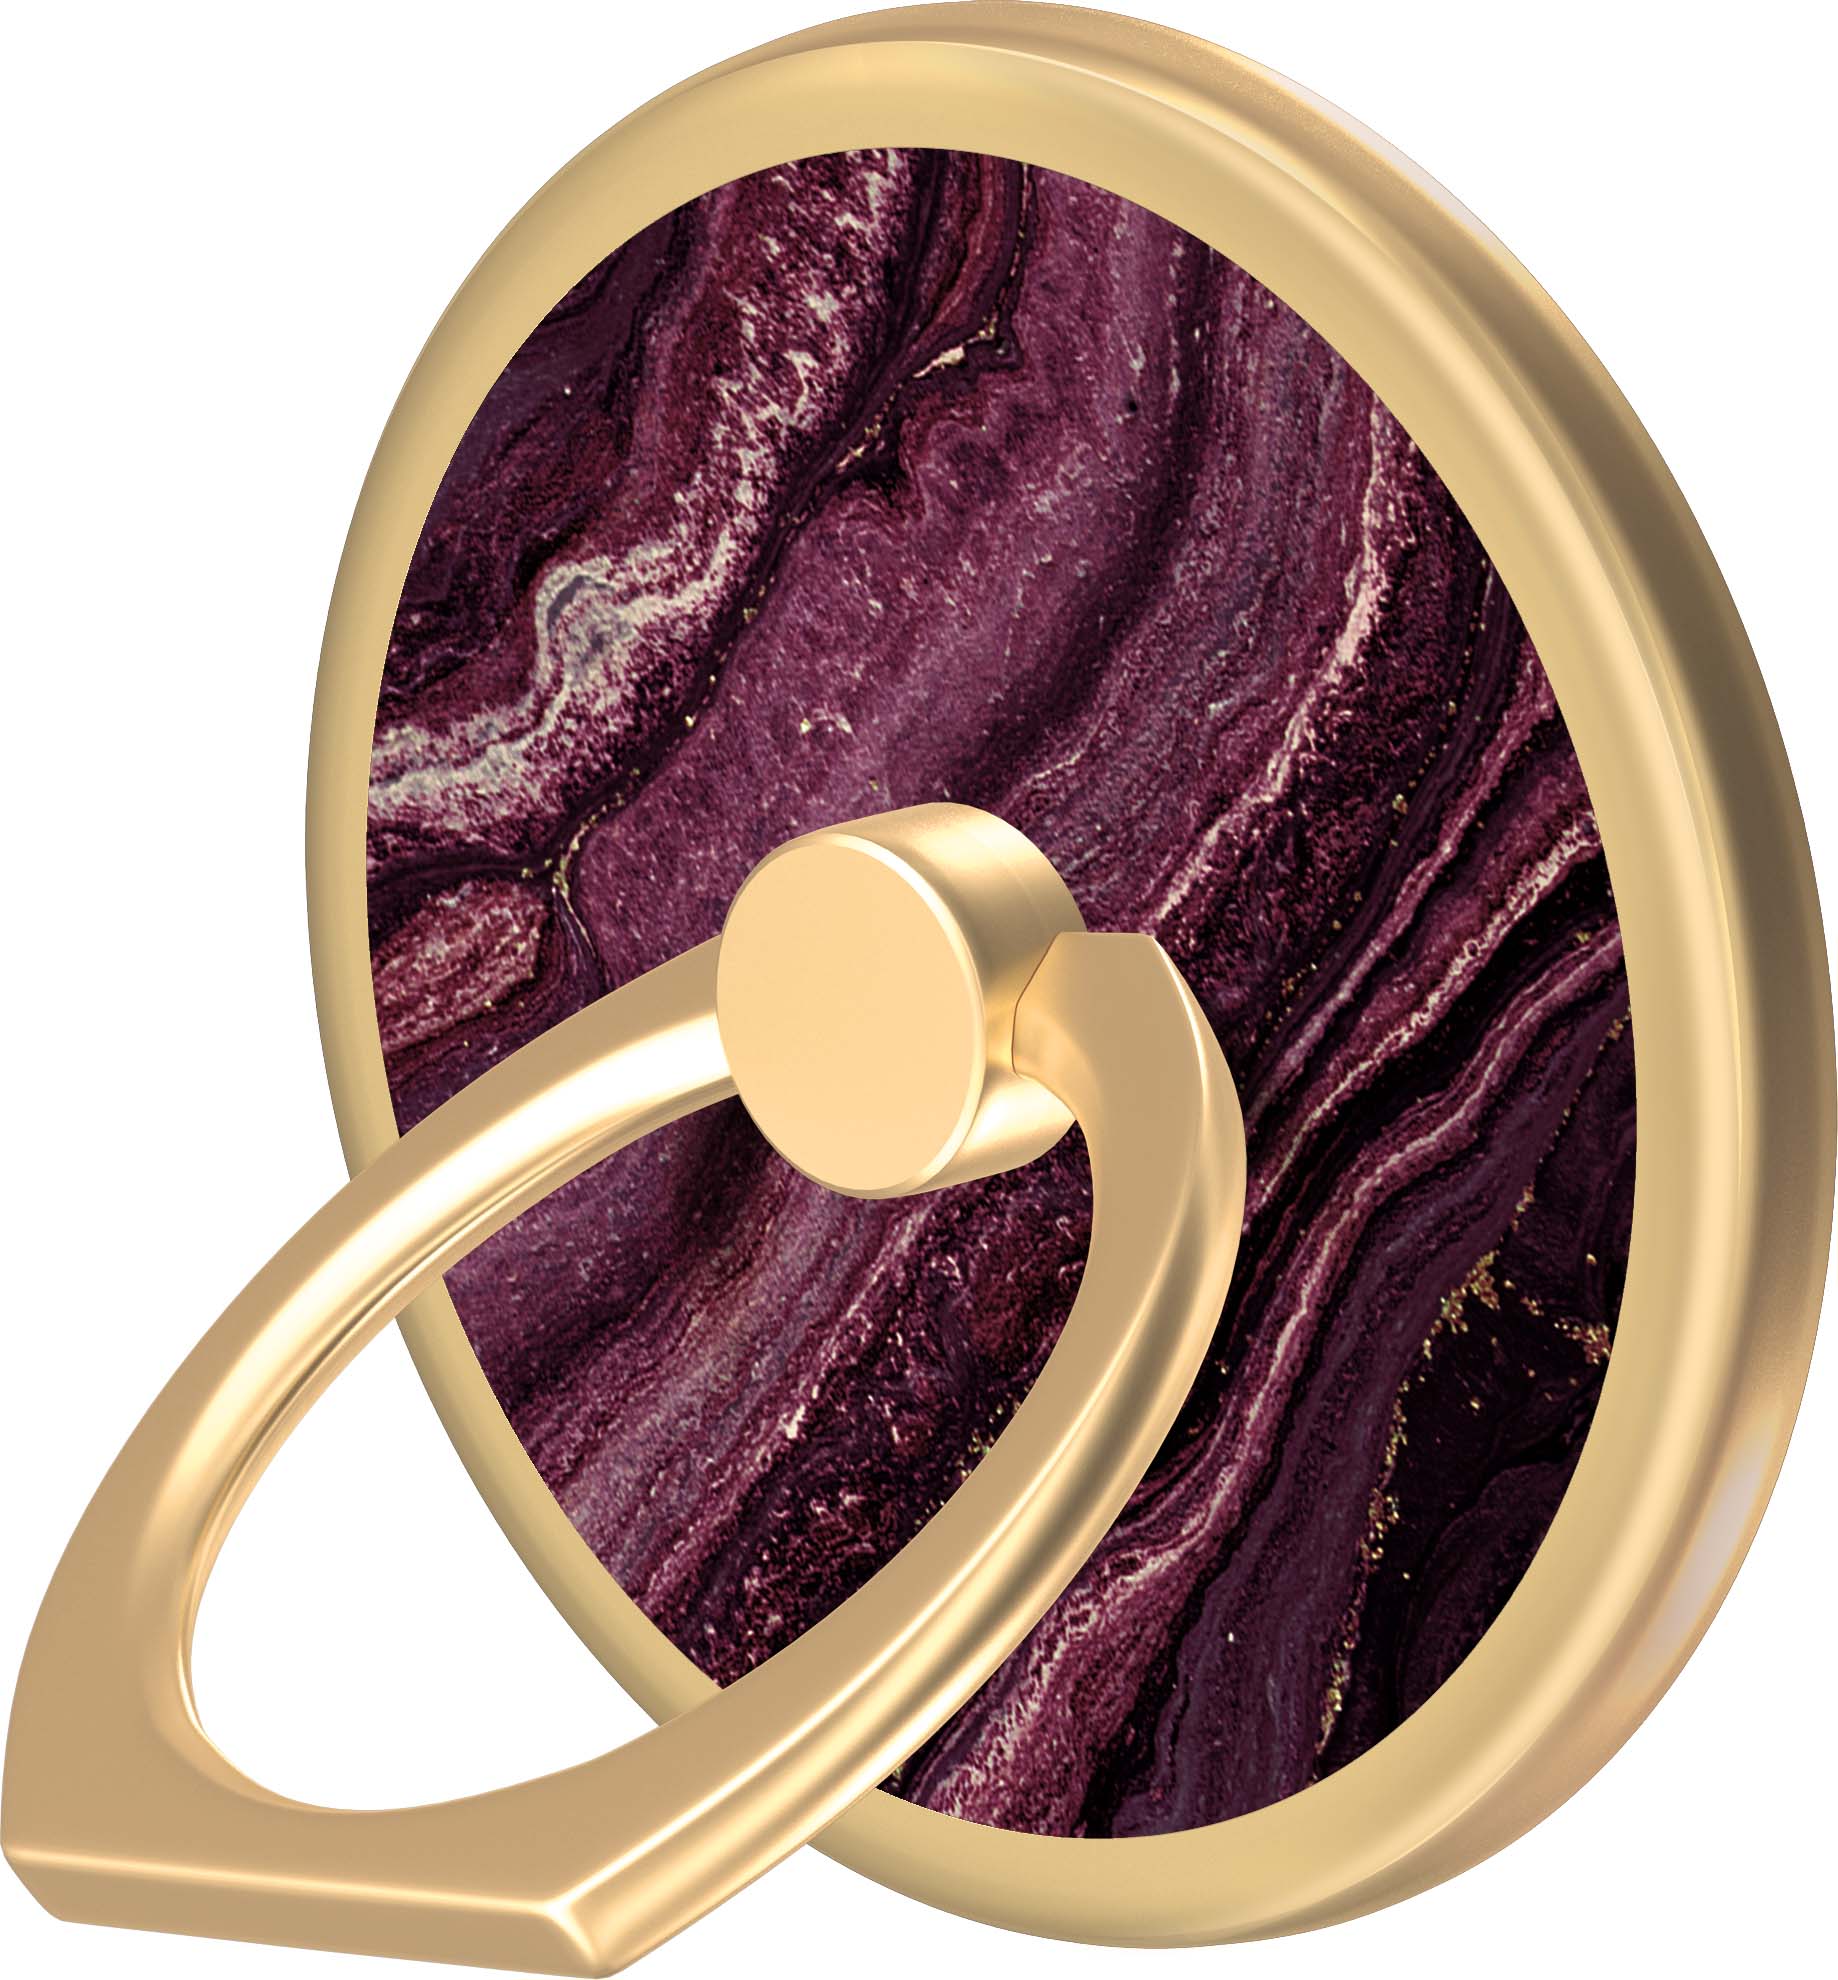 media Uitgraving escaleren iDeal of Sweden Magnetic Ring Mount Golden Plum | lyko.com